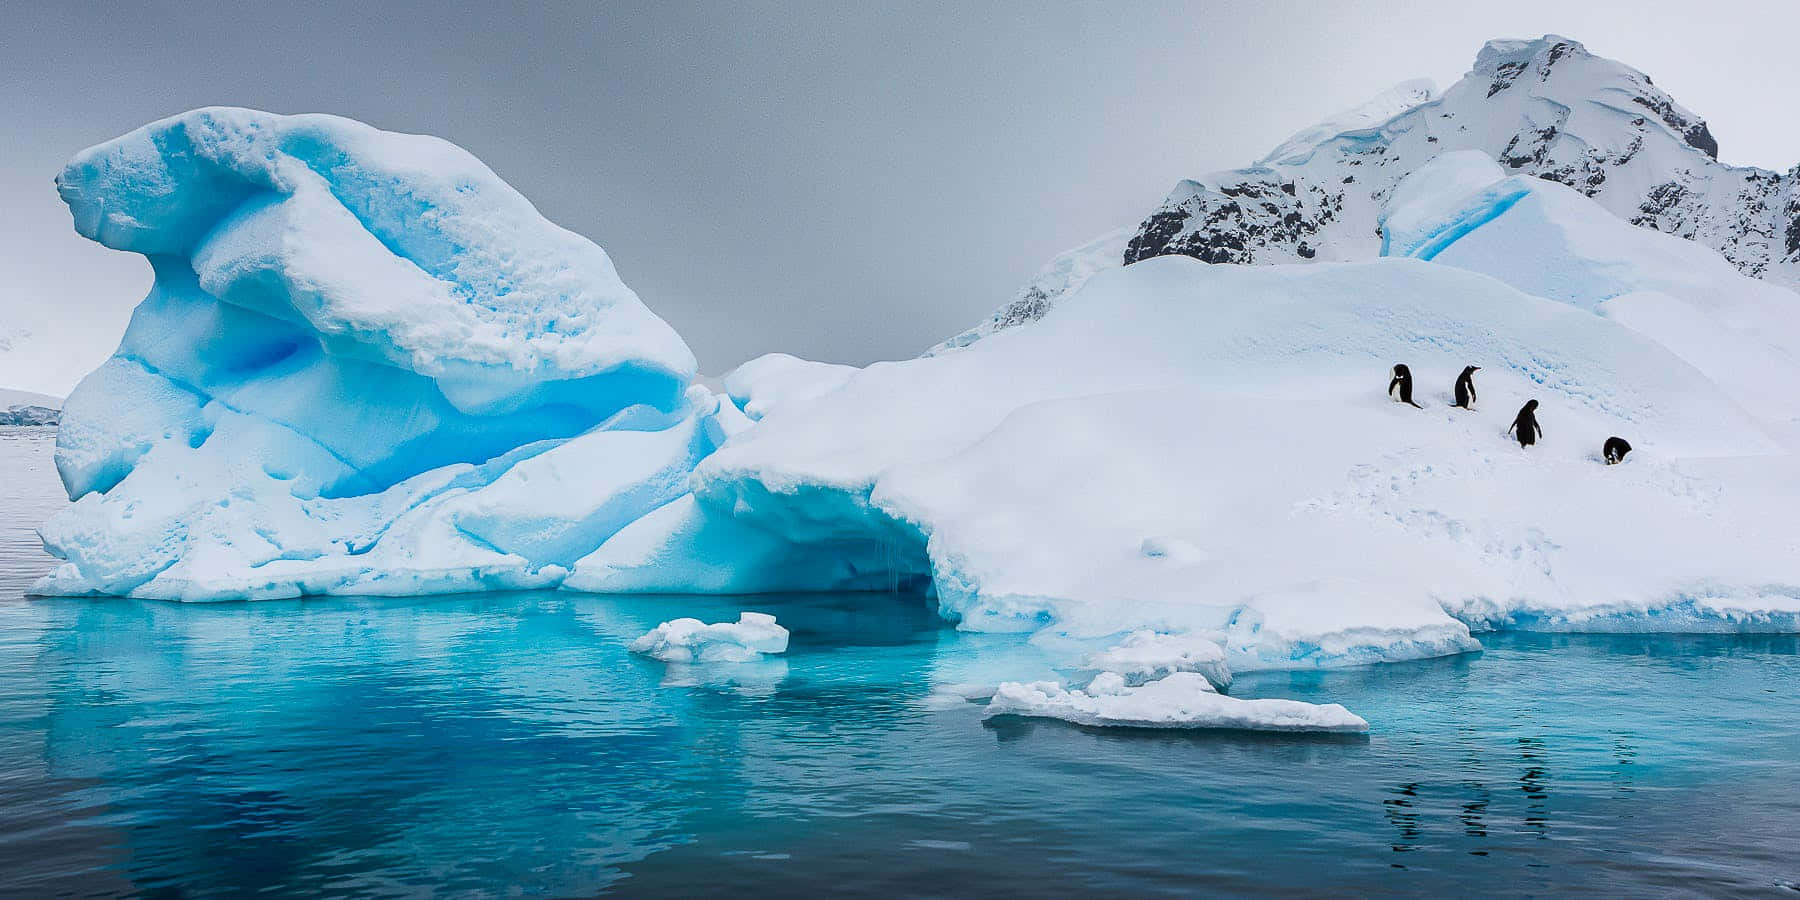 Unaescena Tranquila De Invierno En La Antártida